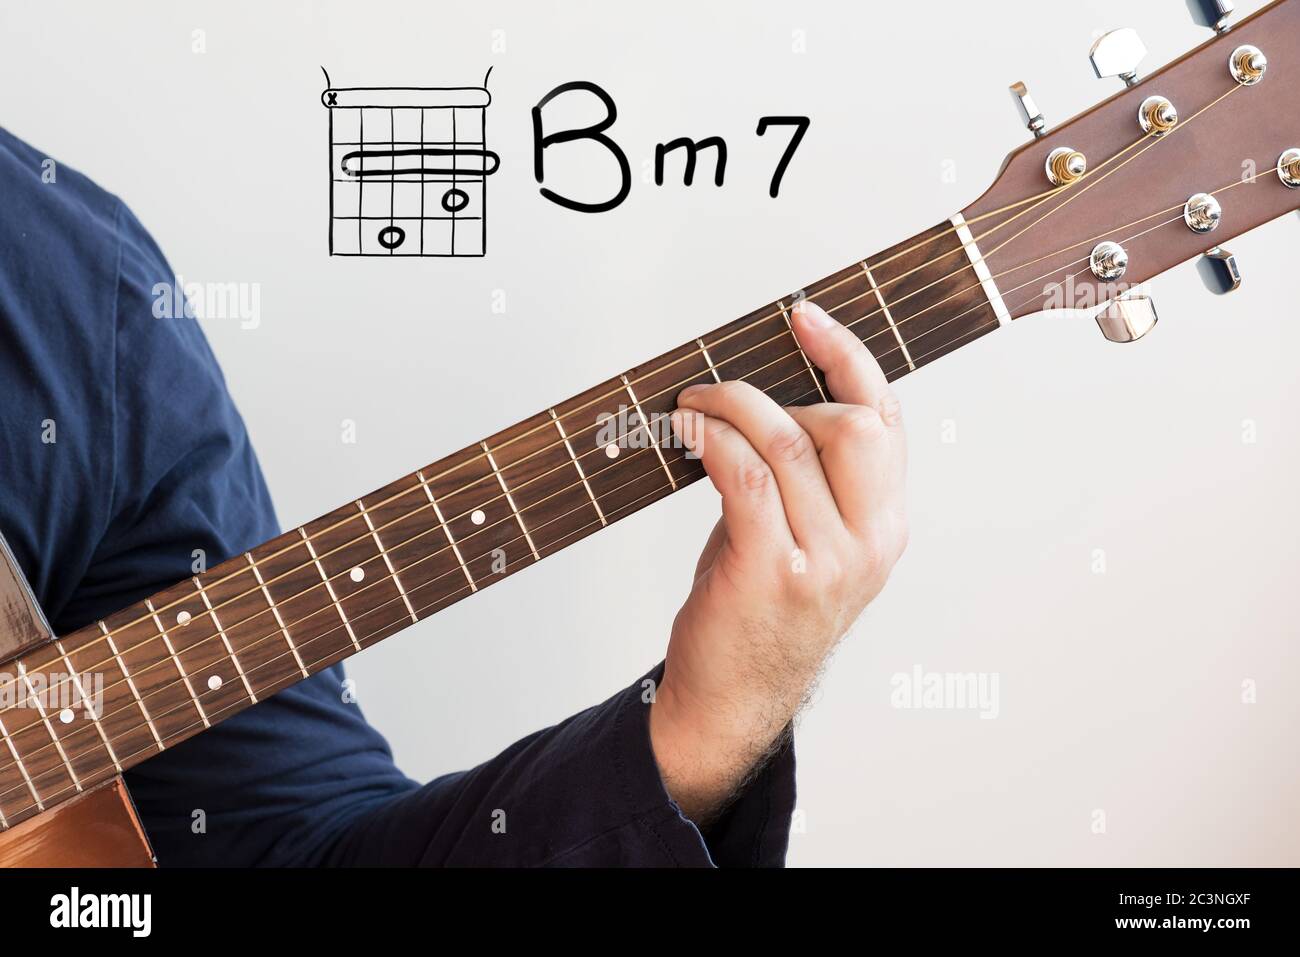 Apprendre la guitare - Homme dans une chemise bleu foncé jouant des accords  de guitare affichés sur tableau blanc, Chord B minor 7 Photo Stock - Alamy